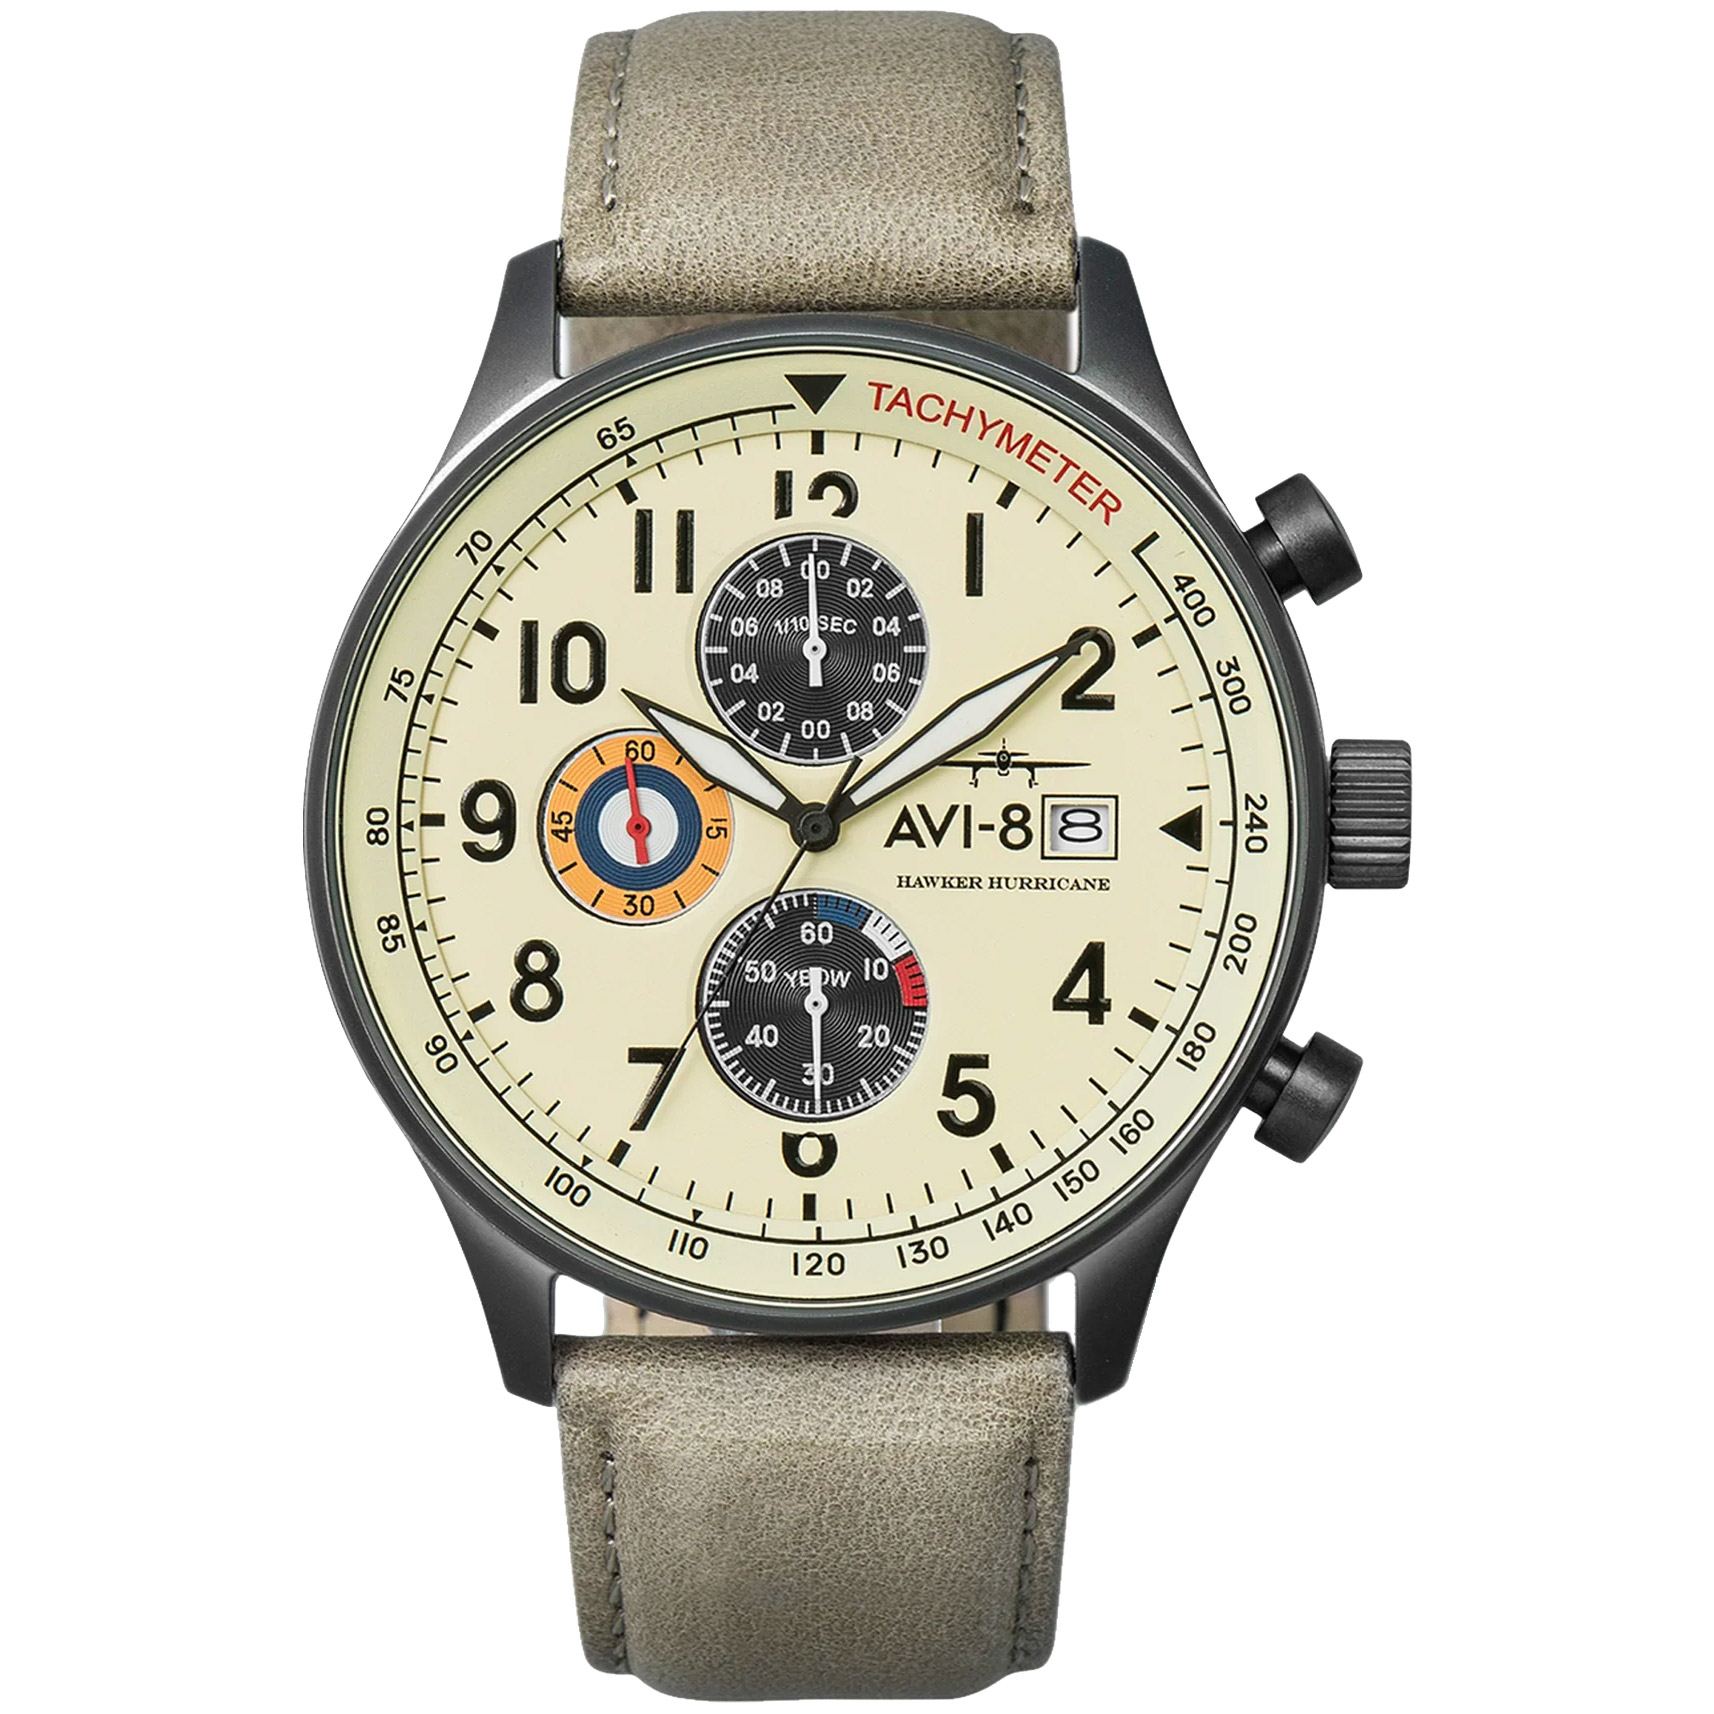 Av 08fb. Часы avi-8 Hawker Hurricane. Часы наручные avi-8 av-4011-0c. Часы avi 8 av 4011. Hawker Typhoon avi-8 часы.